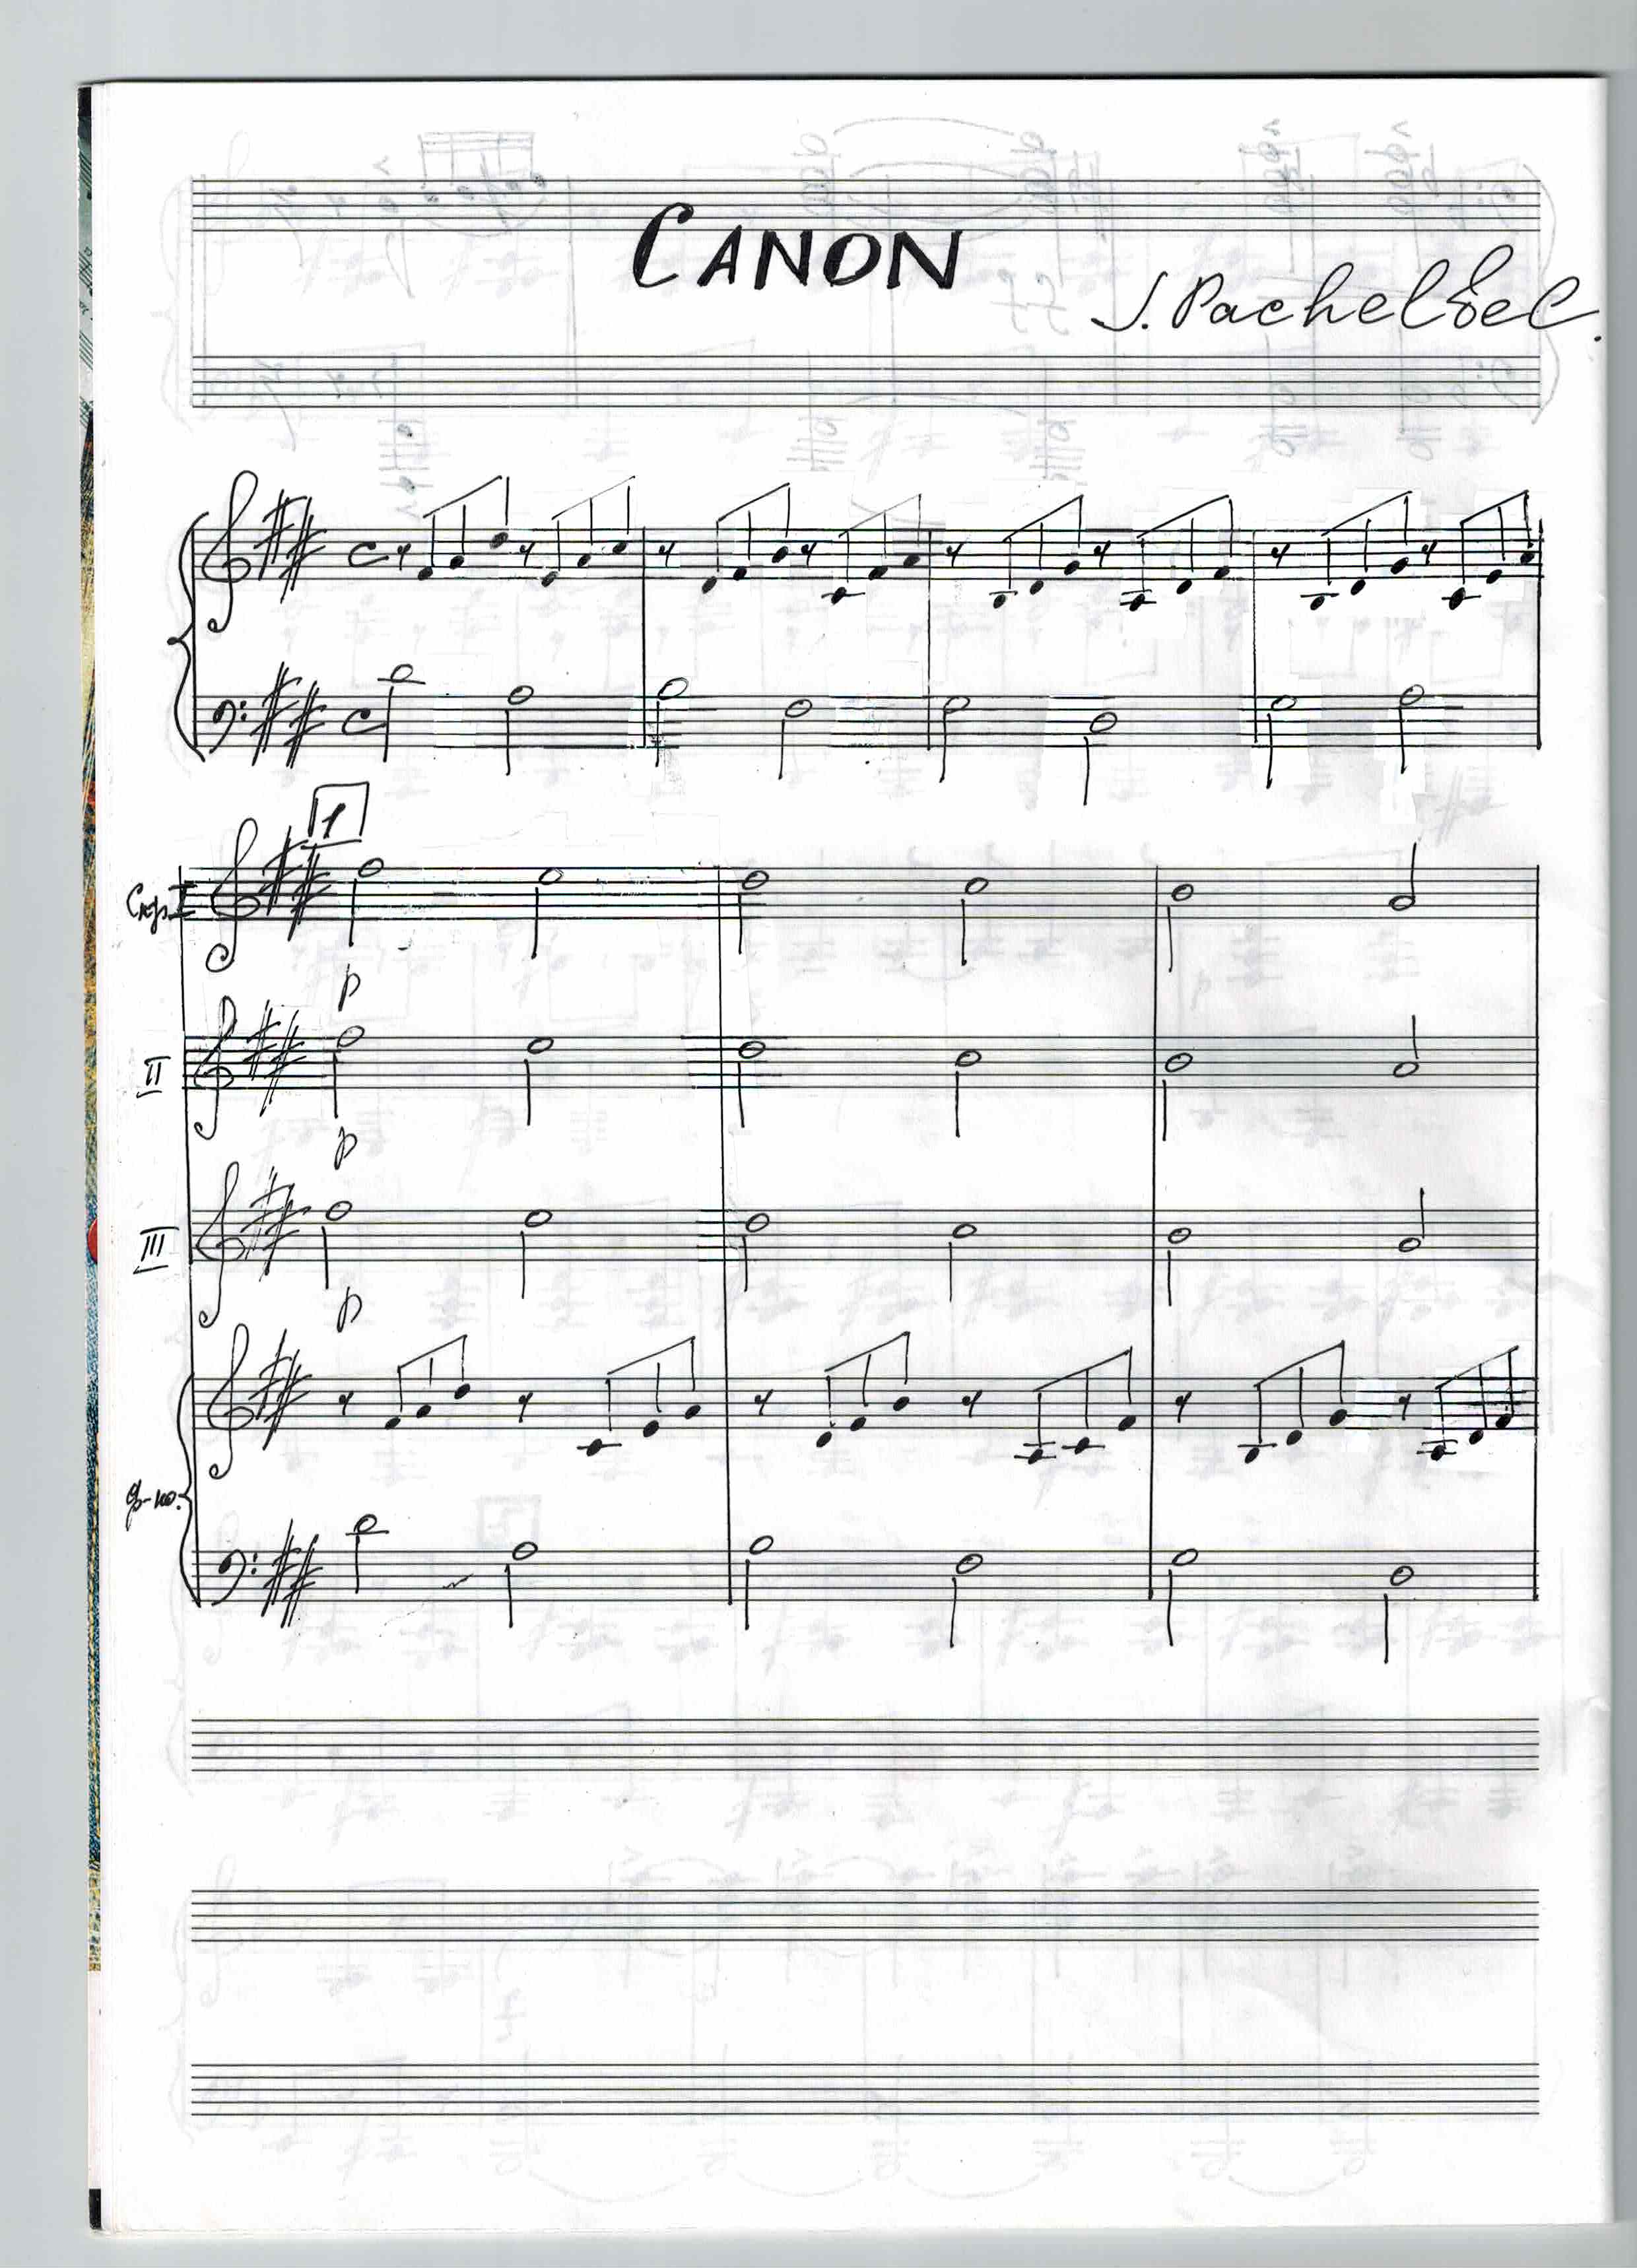 L. Pachelbel CANON. Переложение для ансамбля скрипачей. (Младшие классы)